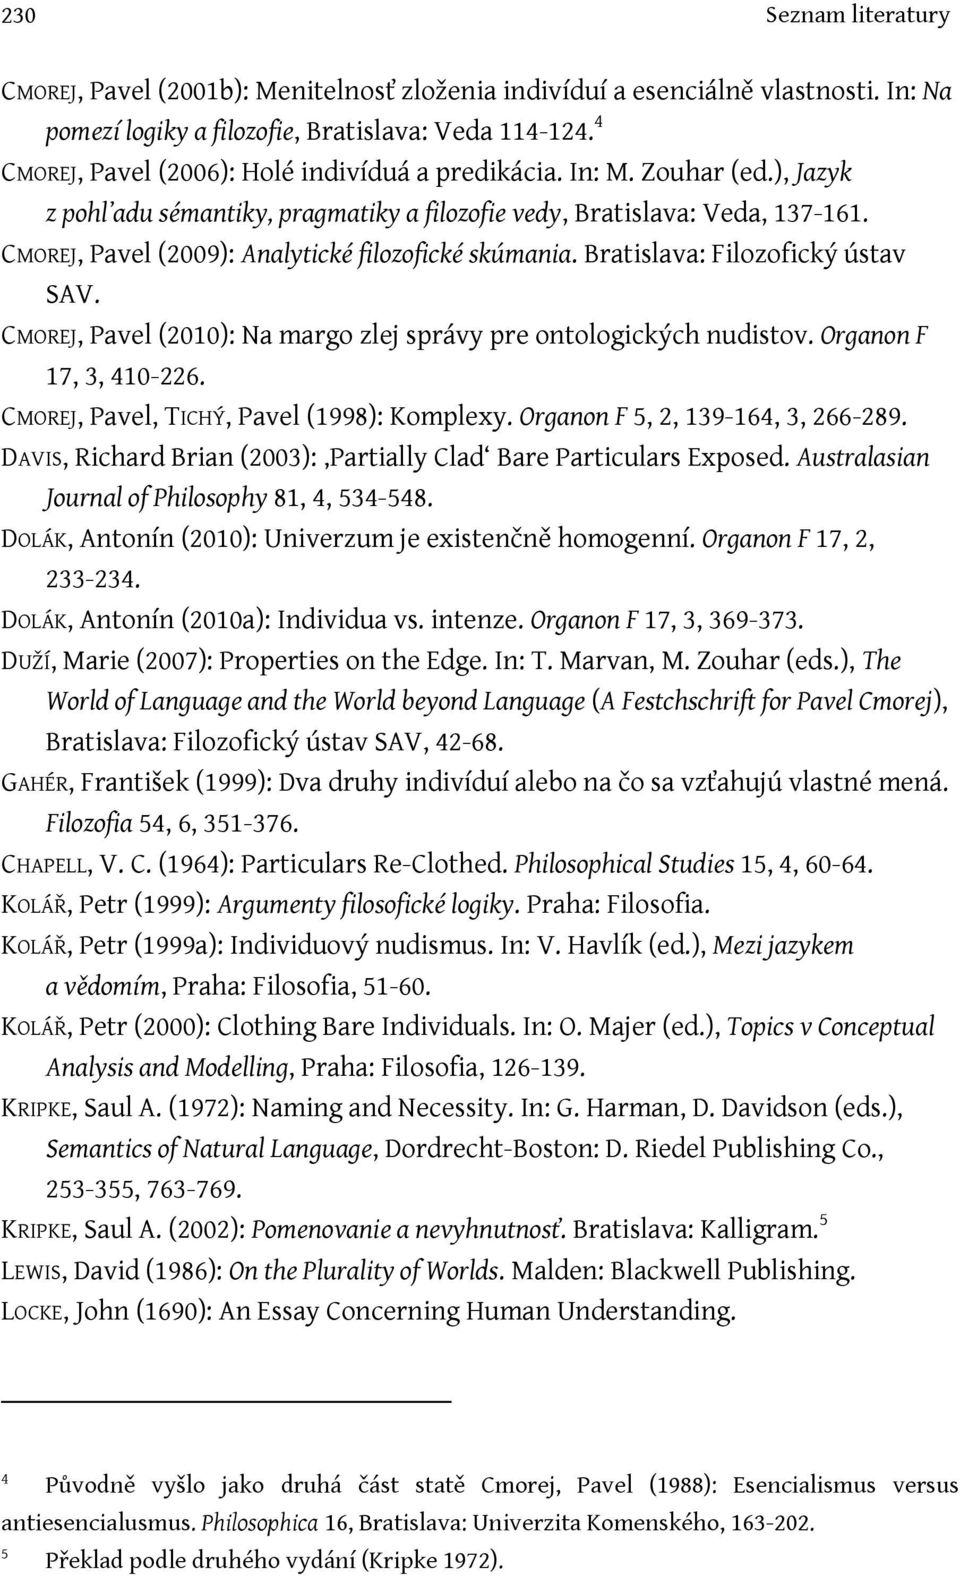 CMOREJ, Pavel (2009): Analytické filozofické skúmania. Bratislava: Filozofický ústav SAV. CMOREJ, Pavel (2010): Na margo zlej správy pre ontologických nudistov. Organon F 17, 3, 410-226.